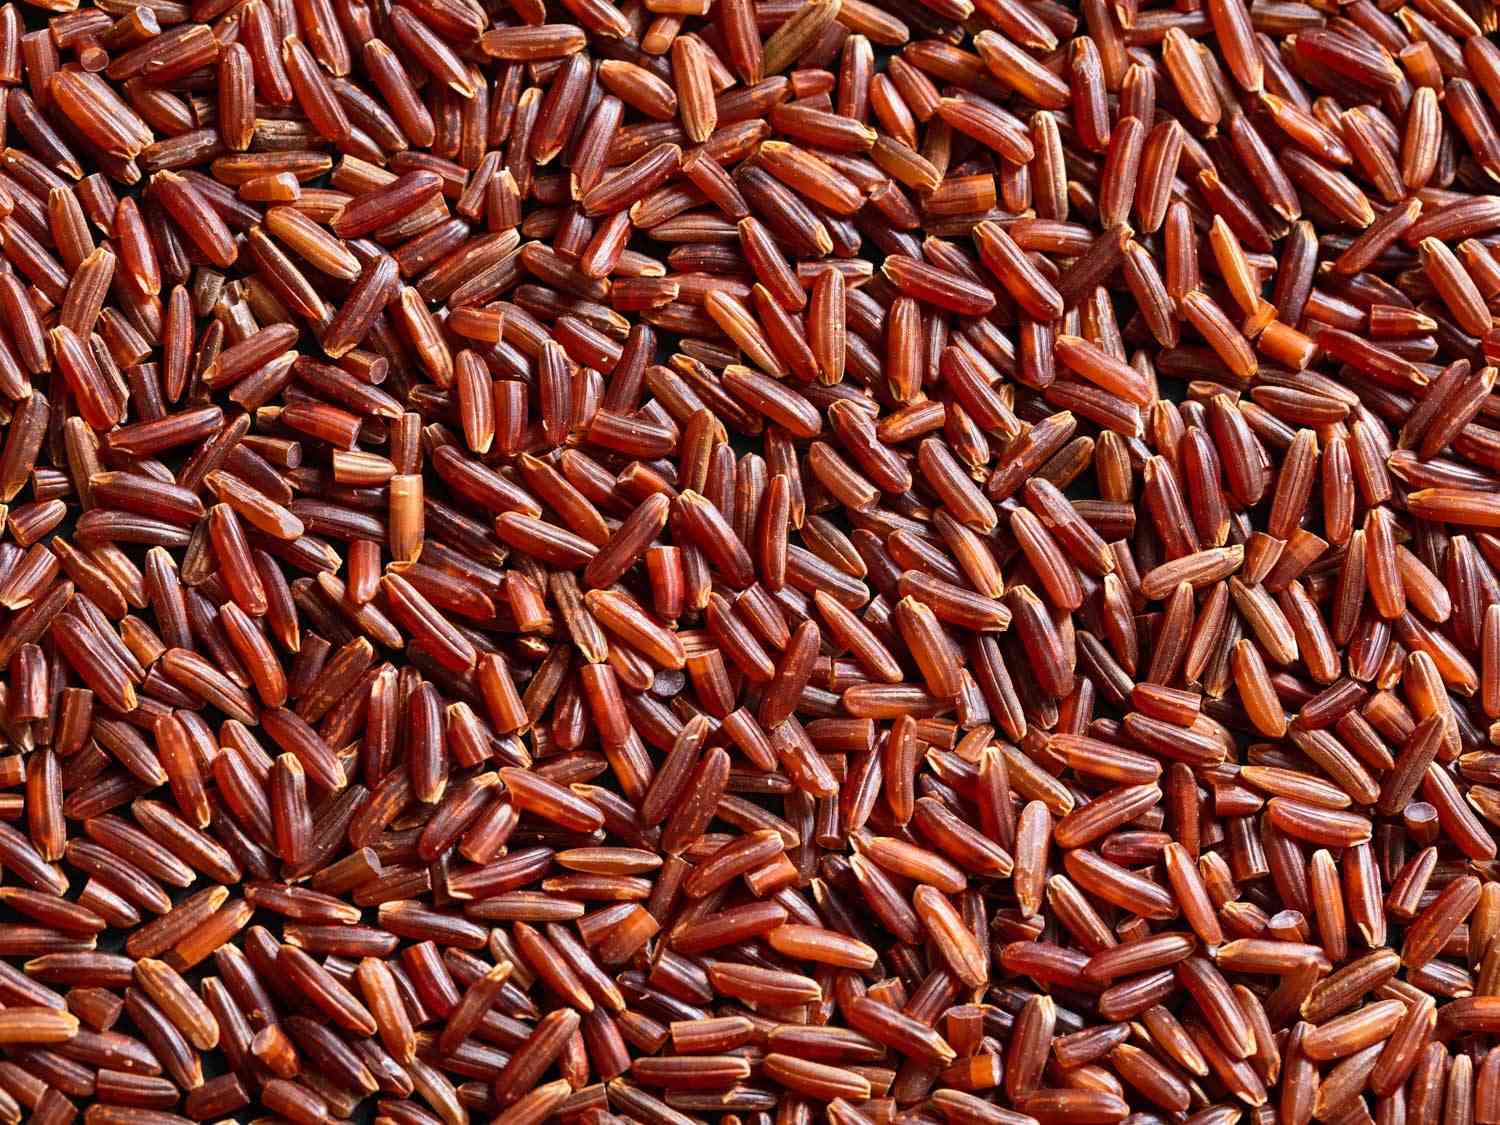 Macro view of red jasmine rice